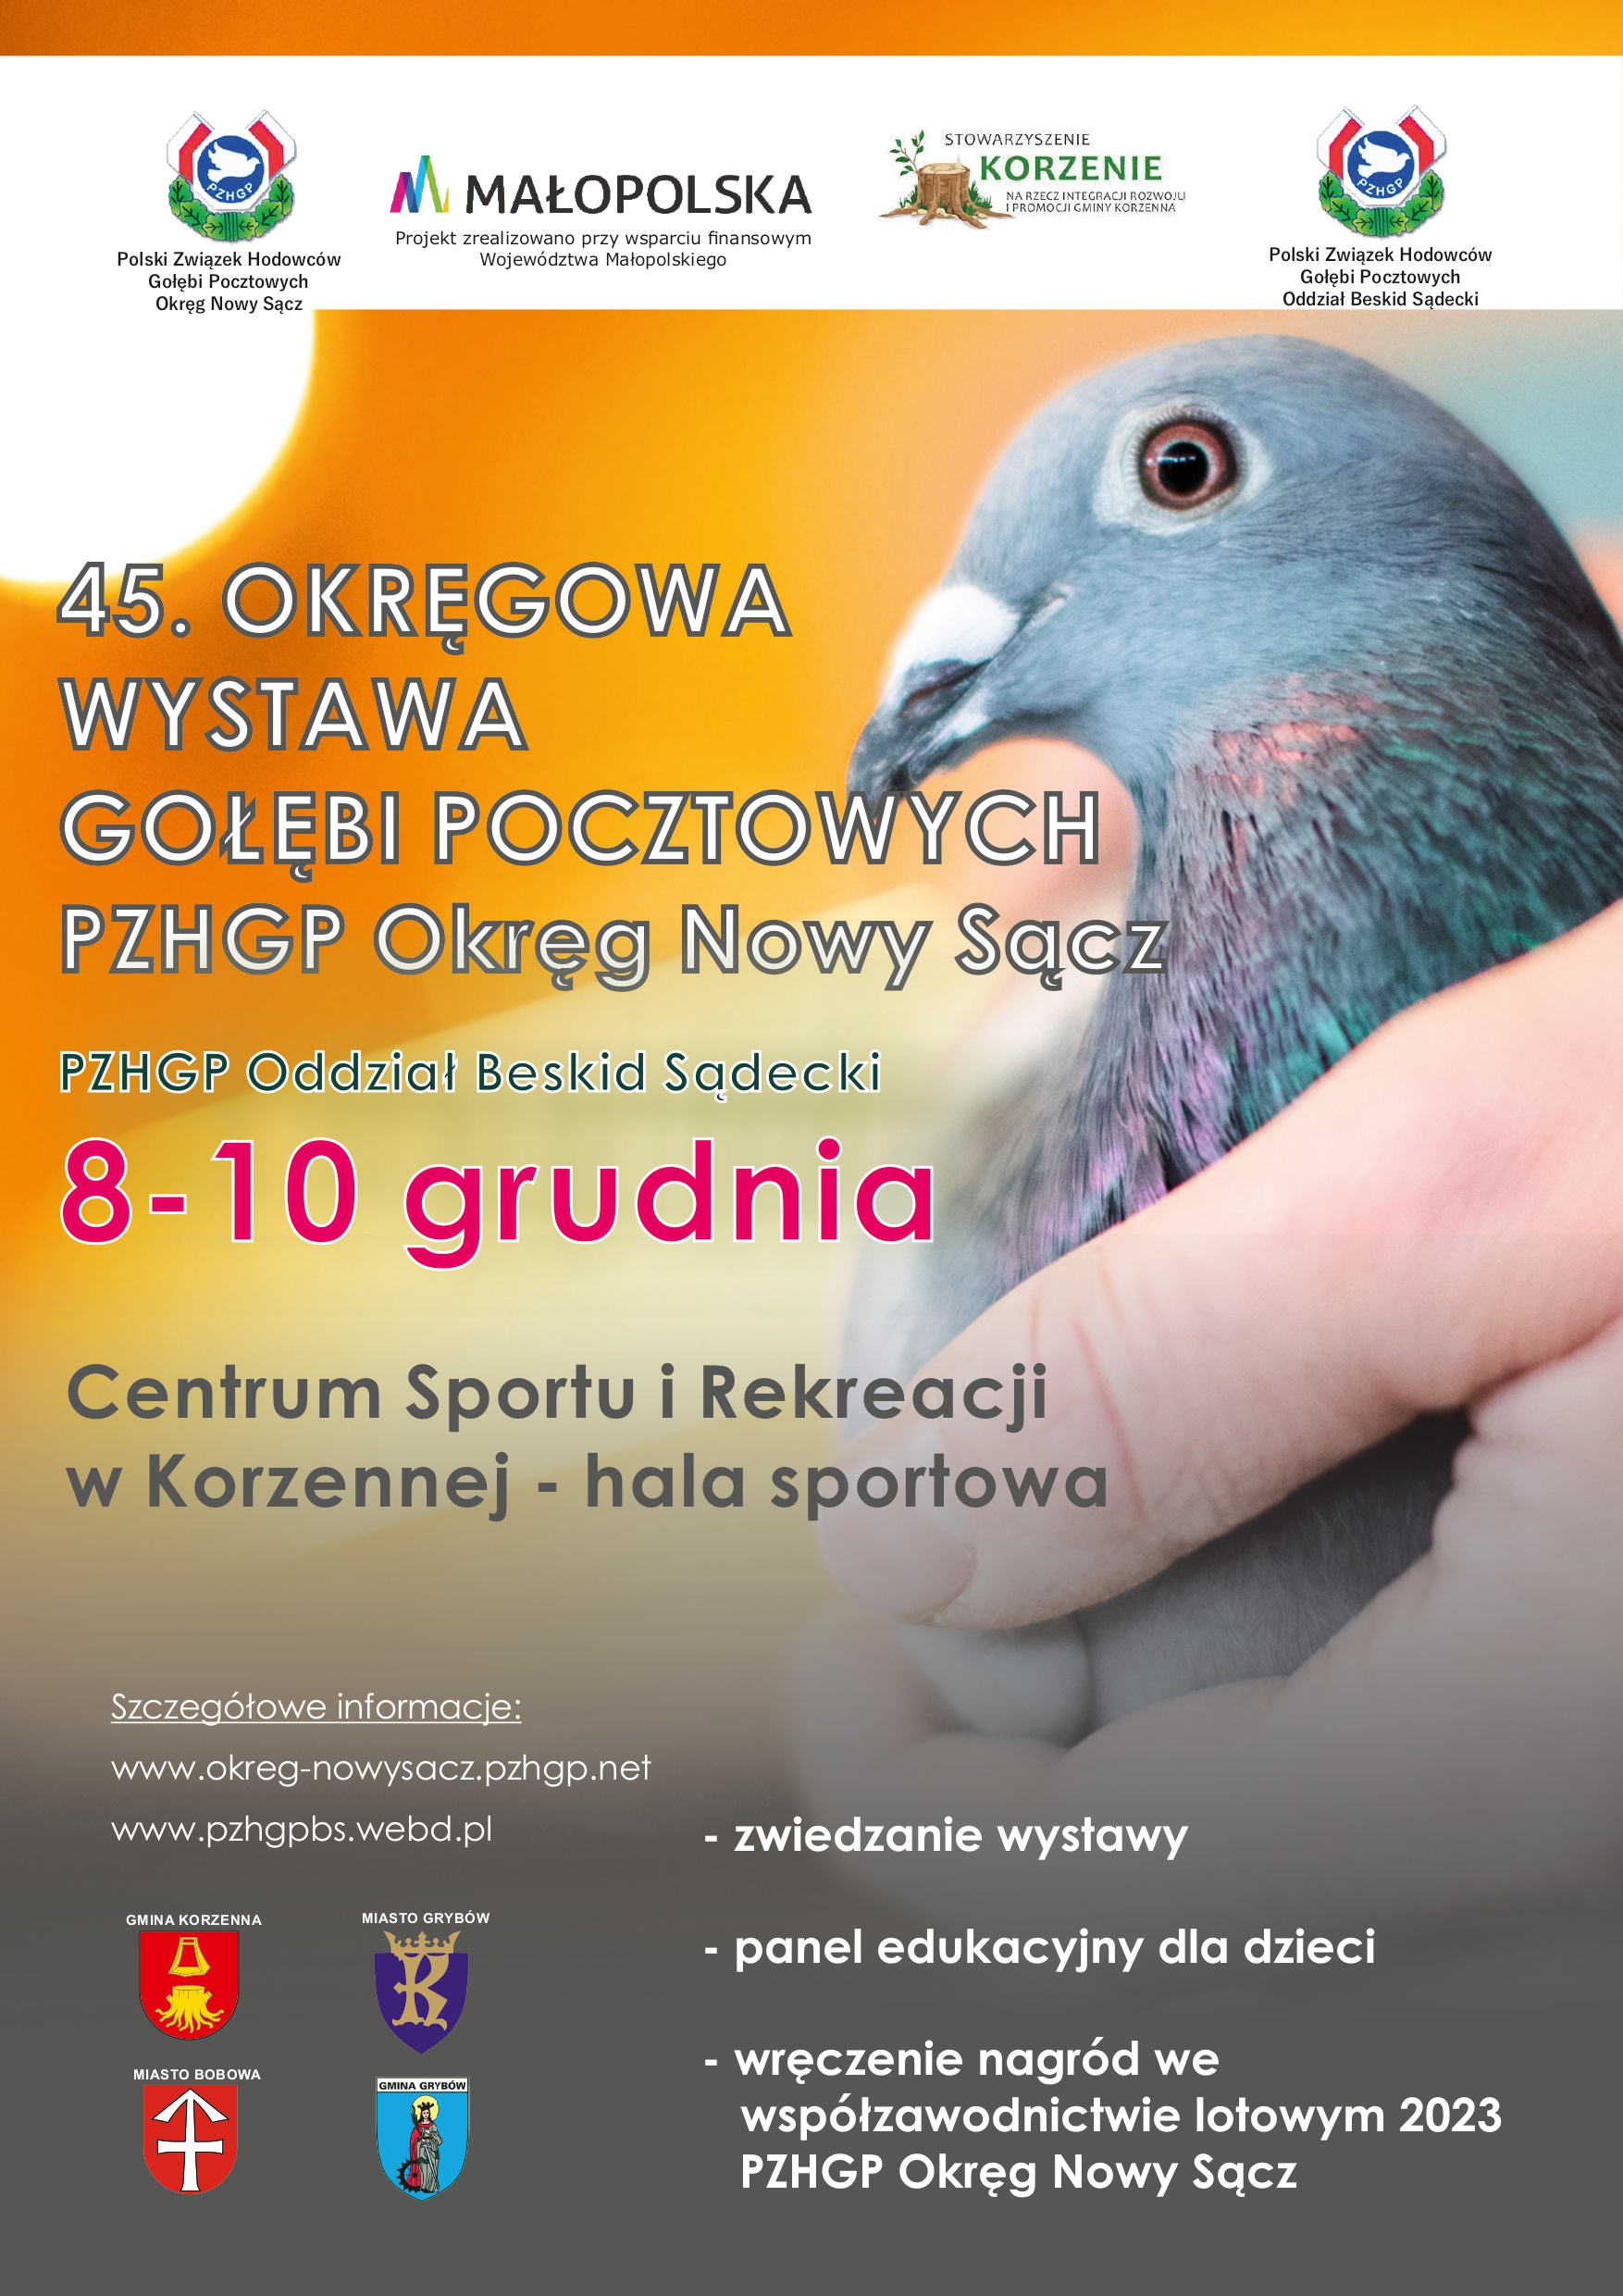 Wystawa gołębi pocztowych w Korzennej 8-10 GRUDNIA